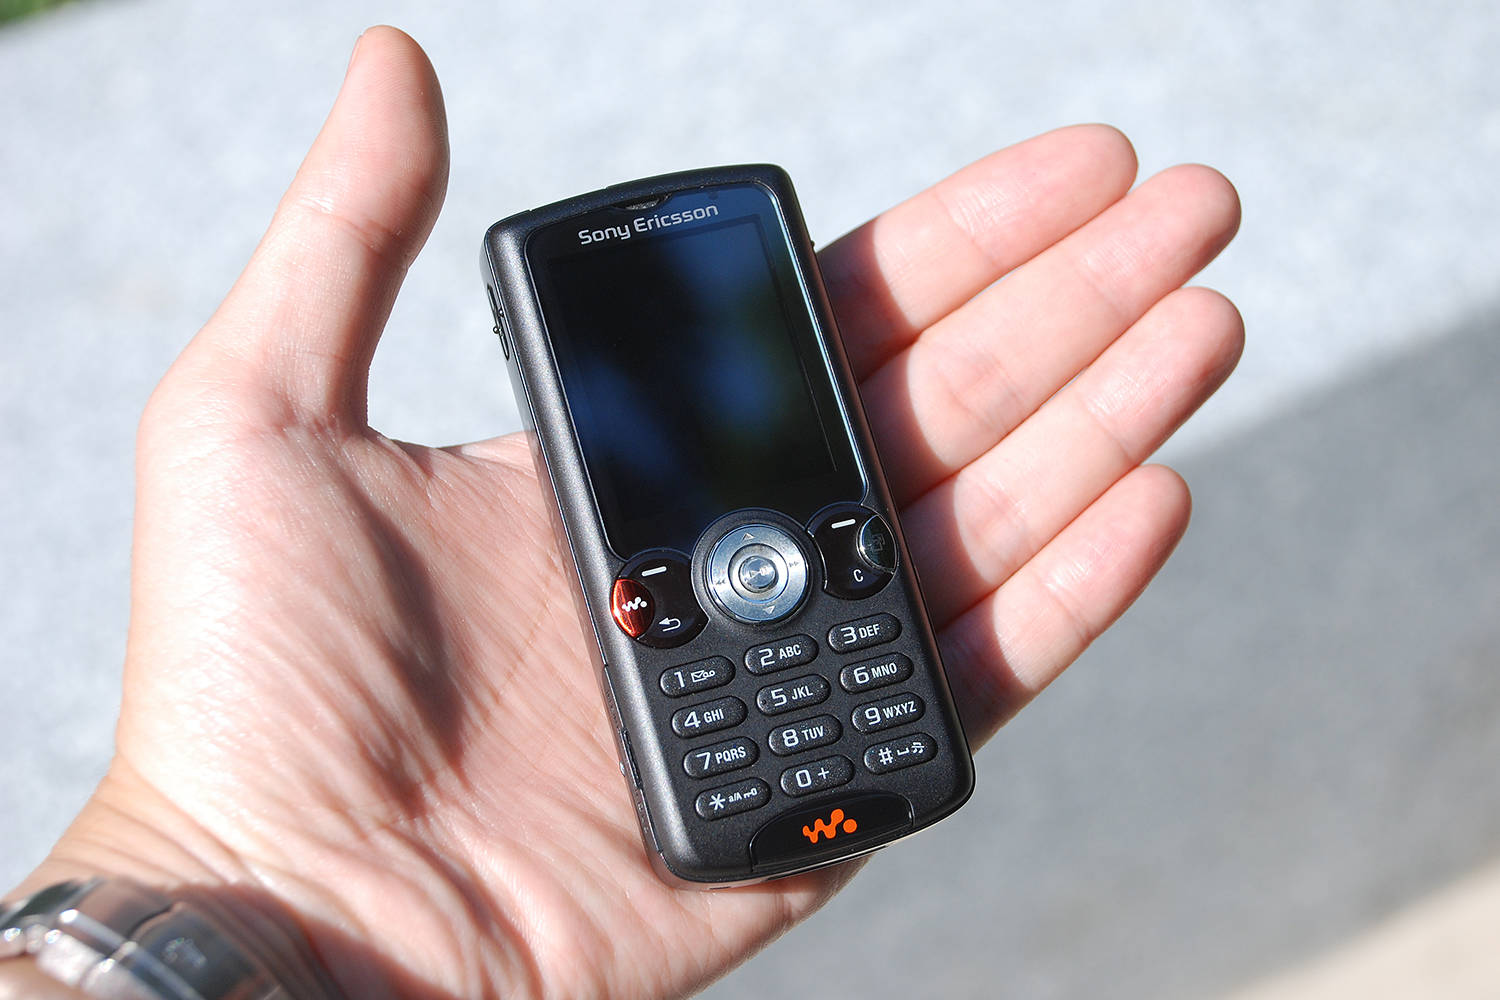 walkman手机,让人只想听歌而即使在十几年前,市面上的音乐手机也不少